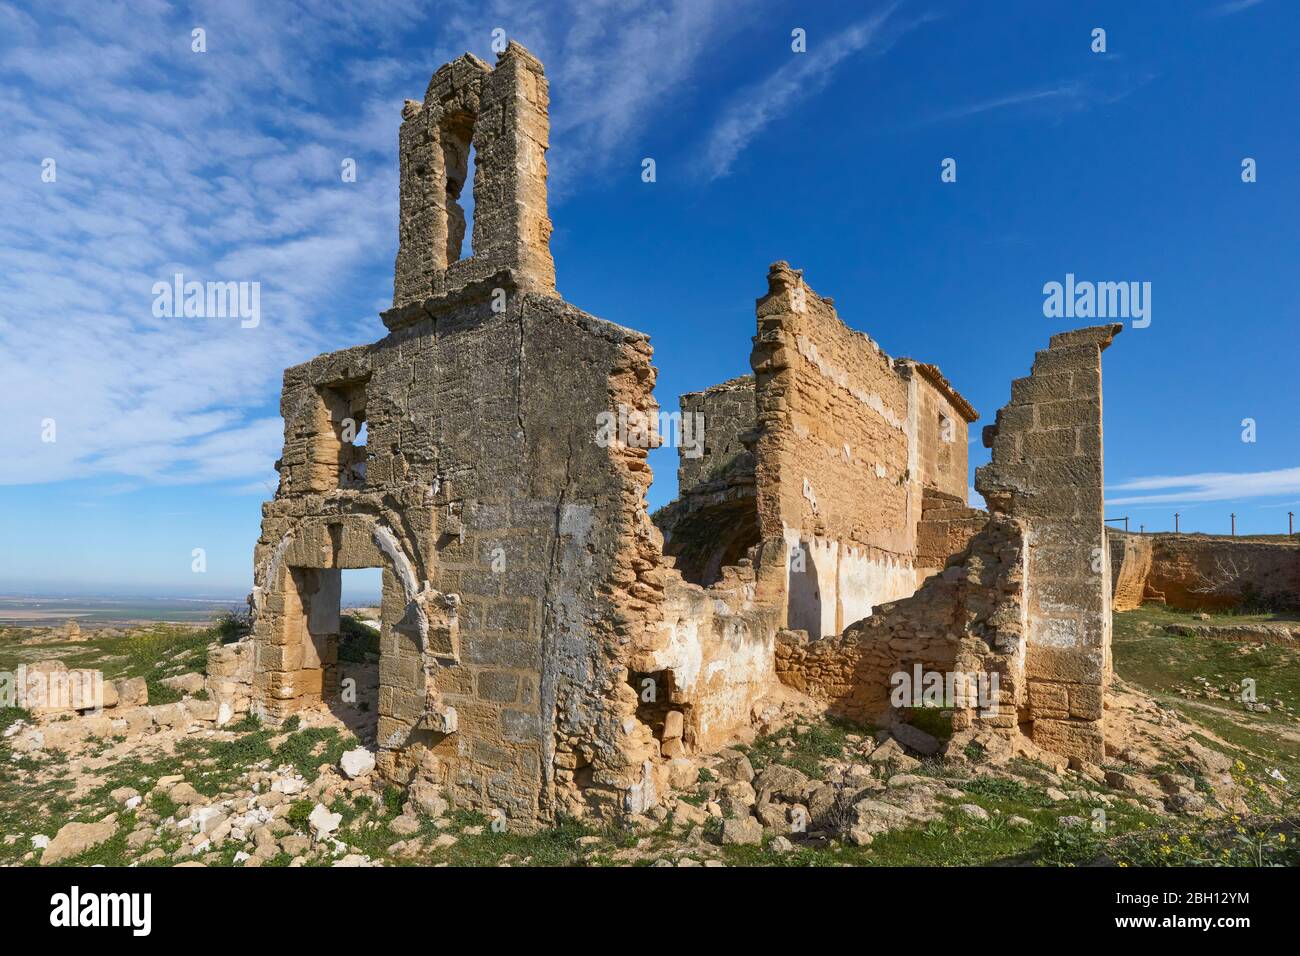 hermitage Via sacra in ruins in Osuna, seville. Spain Stock Photo